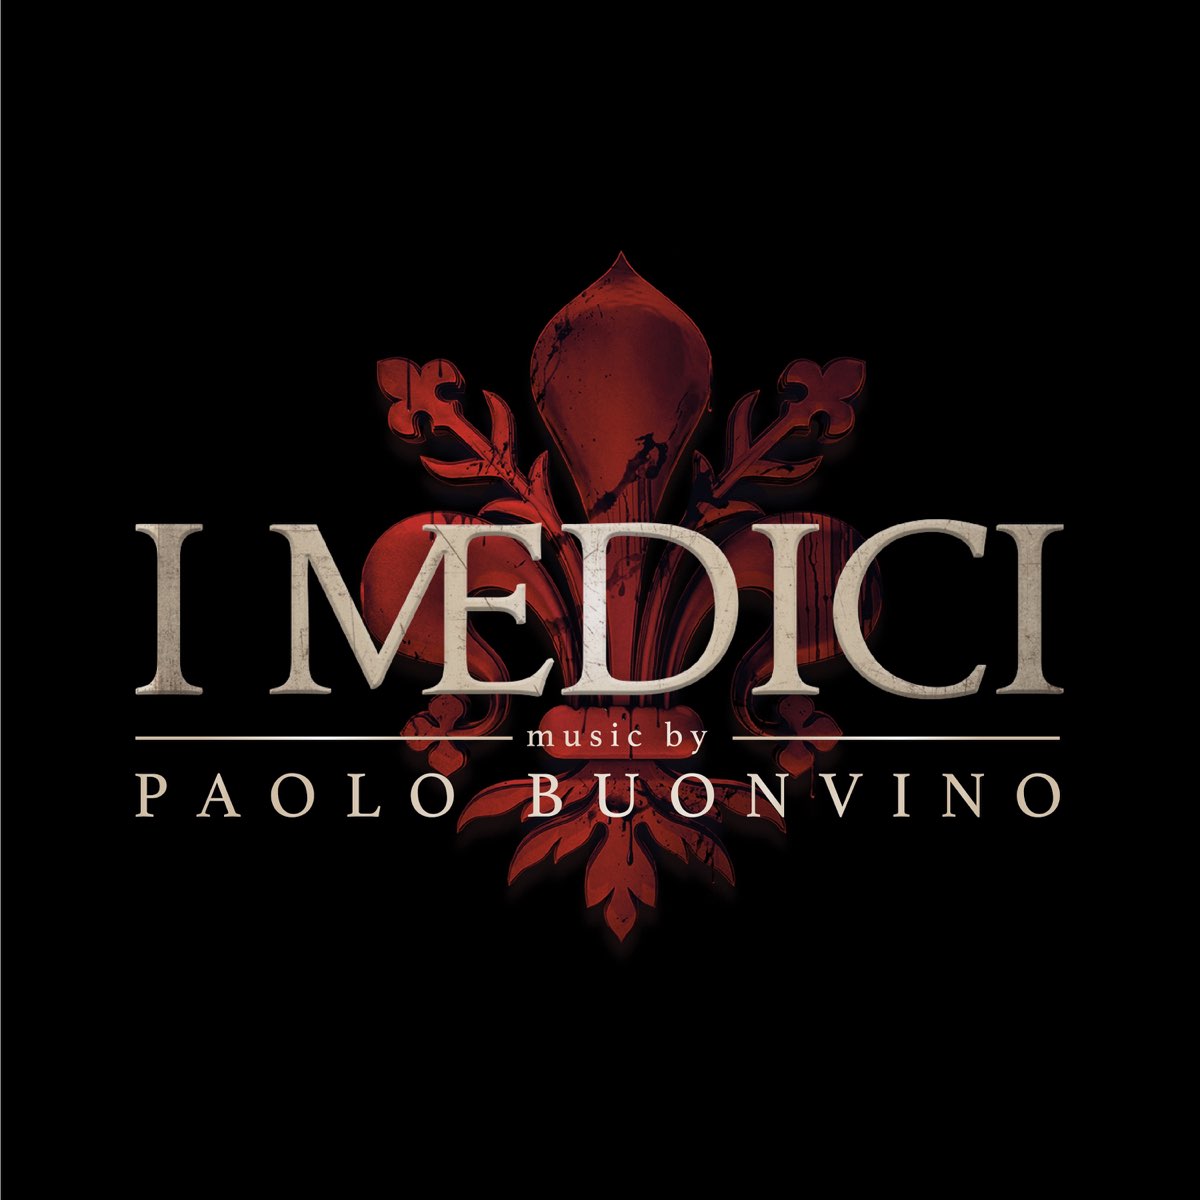 I Medici (Original Soundtrack) - Album by Paolo Buonvino - Apple Music